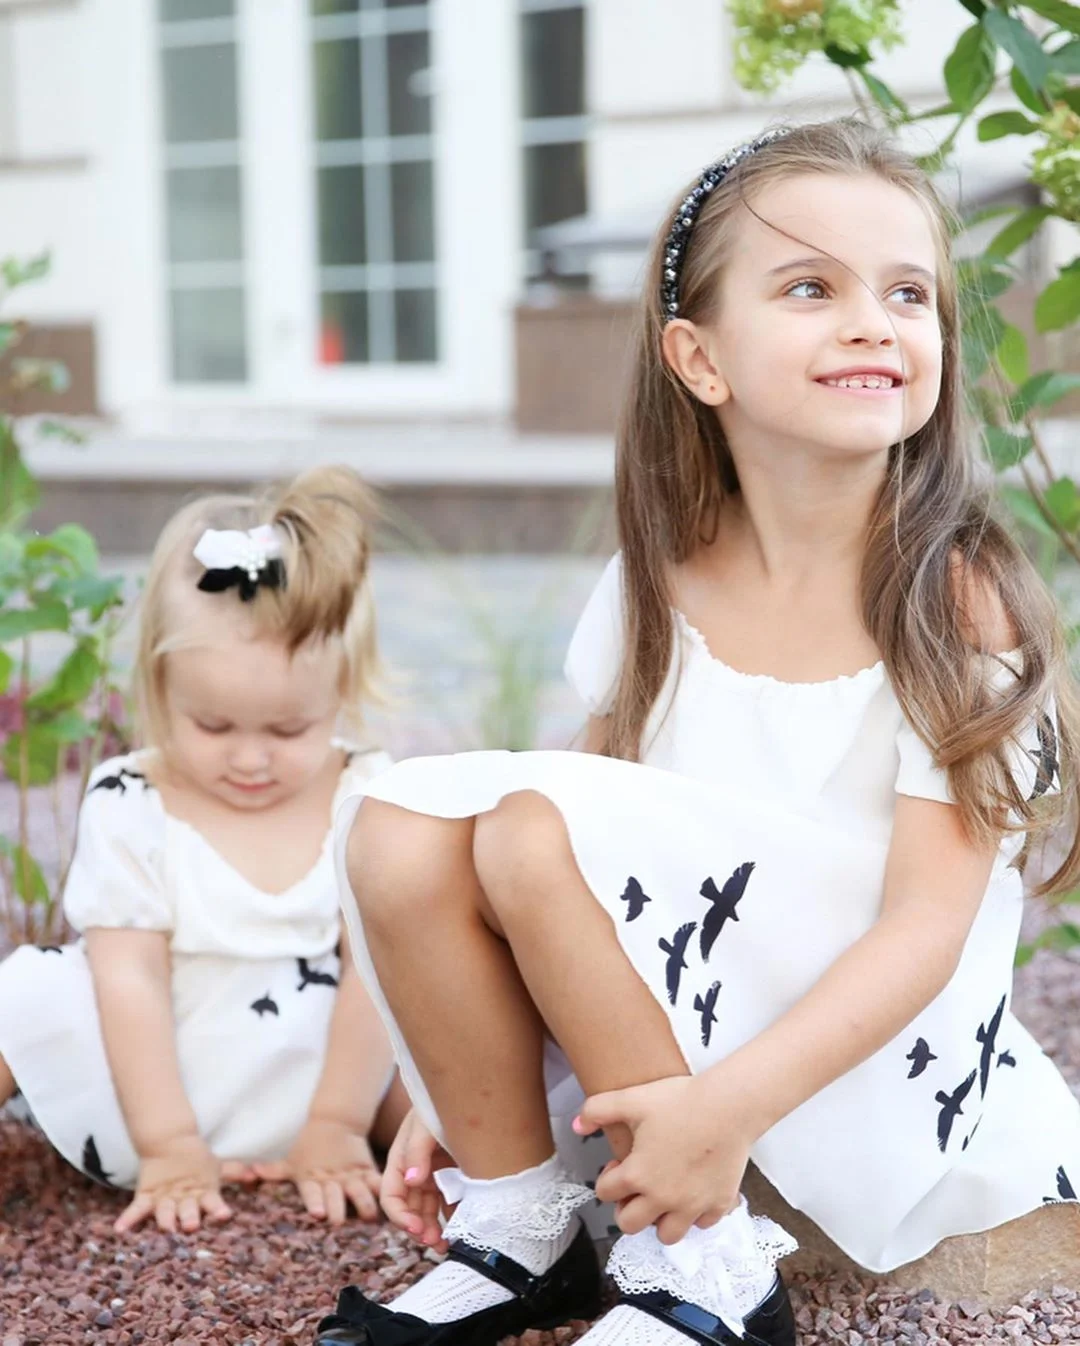 Лилия Ребрик растрогала семейной фотосессией с маленькими дочерьми - фото 449323